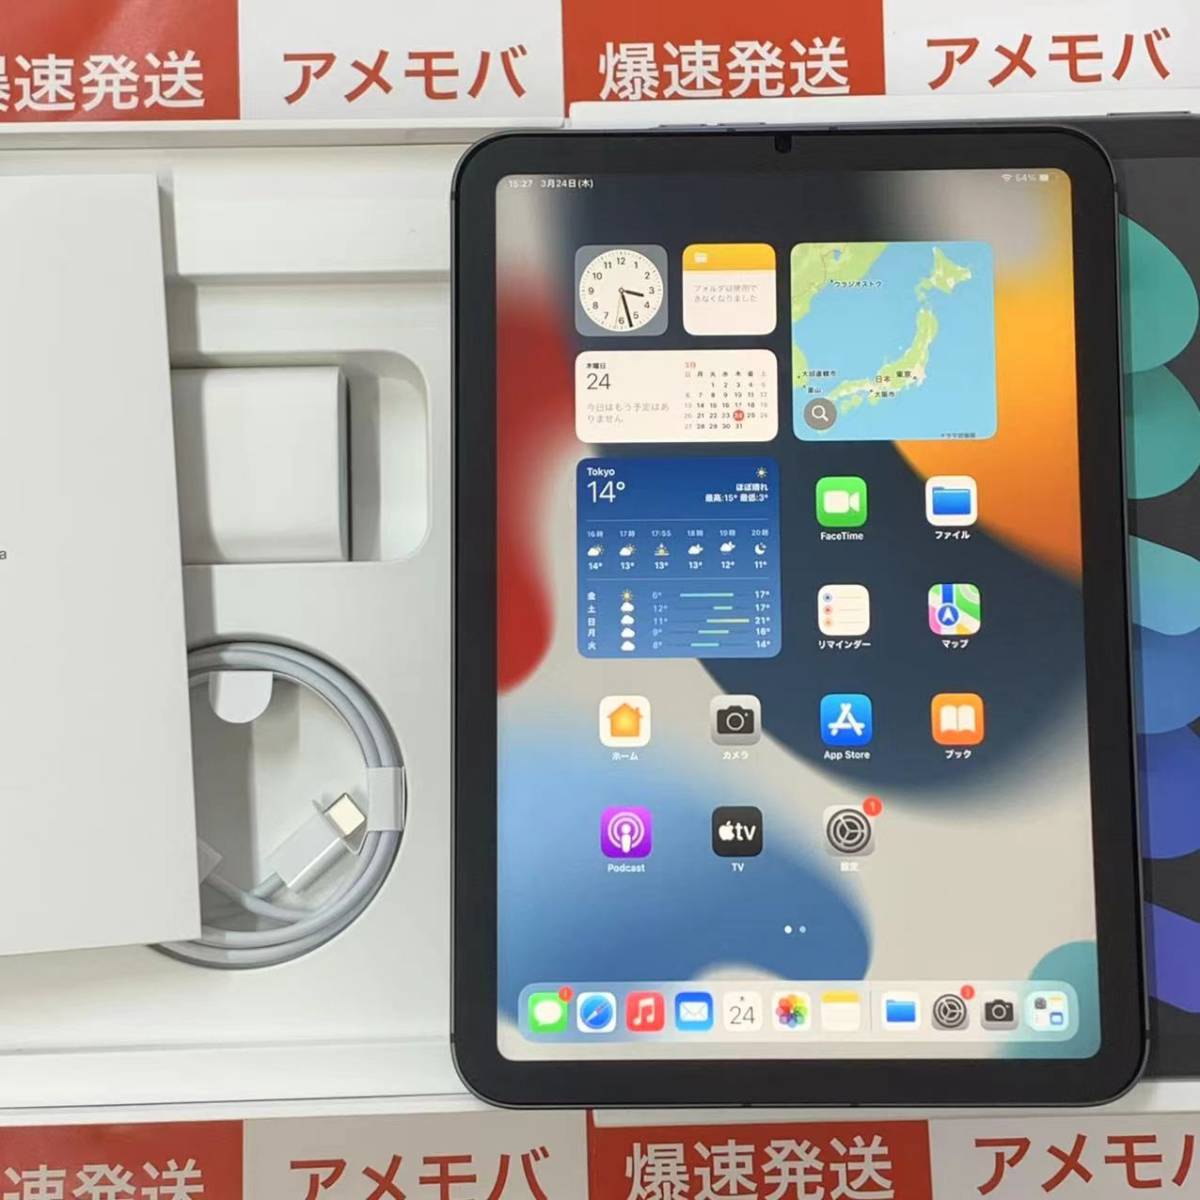 日本直販オンライン iPad パープル 64GB Wi-Fi+Cellular 6 mini タブレット